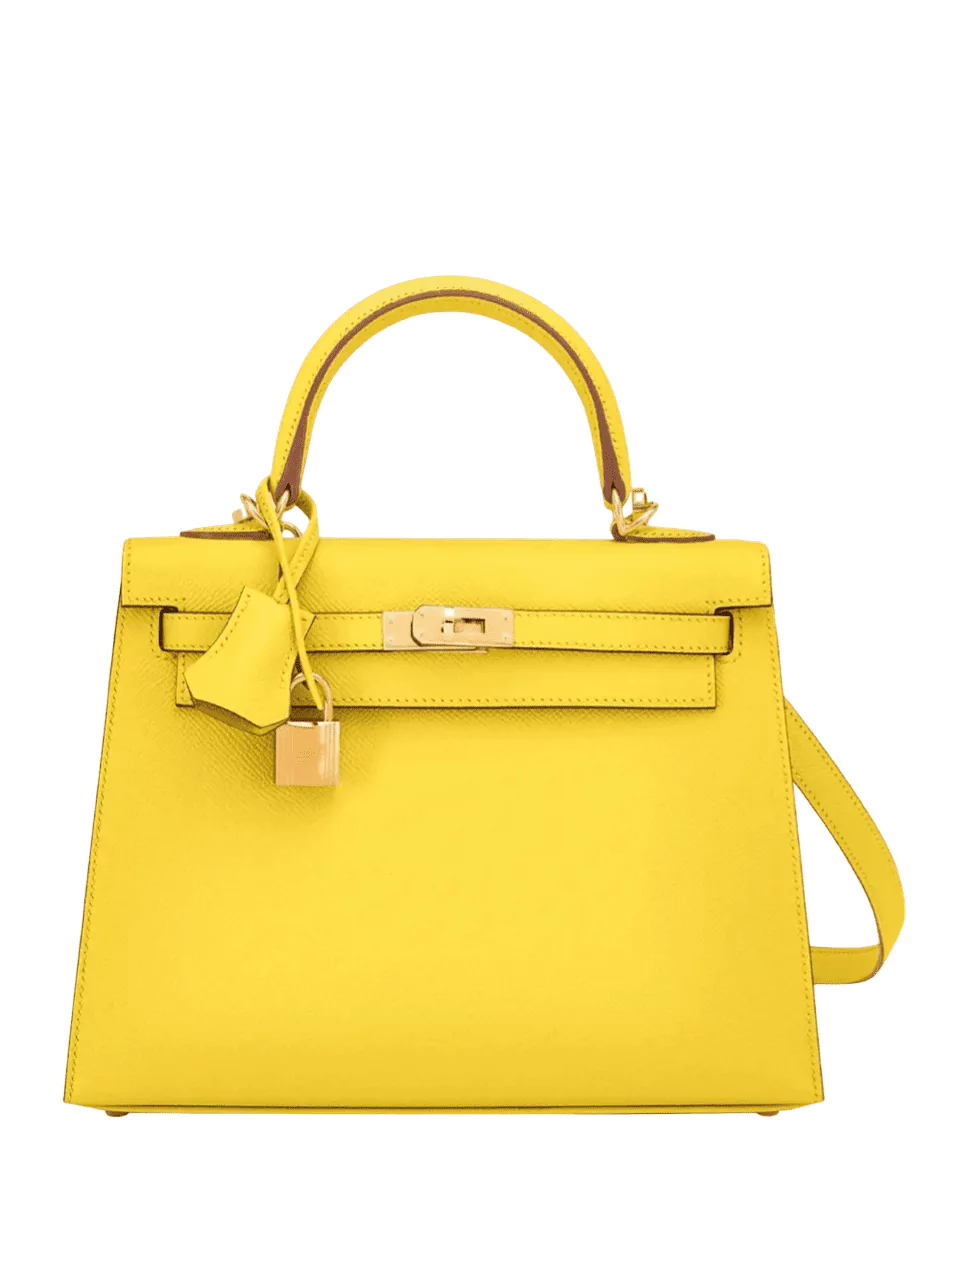 Louer sac Hermès Kelly Jaune Citron & Or - Expérience de location de sacs de luxe en ligne avec welPop